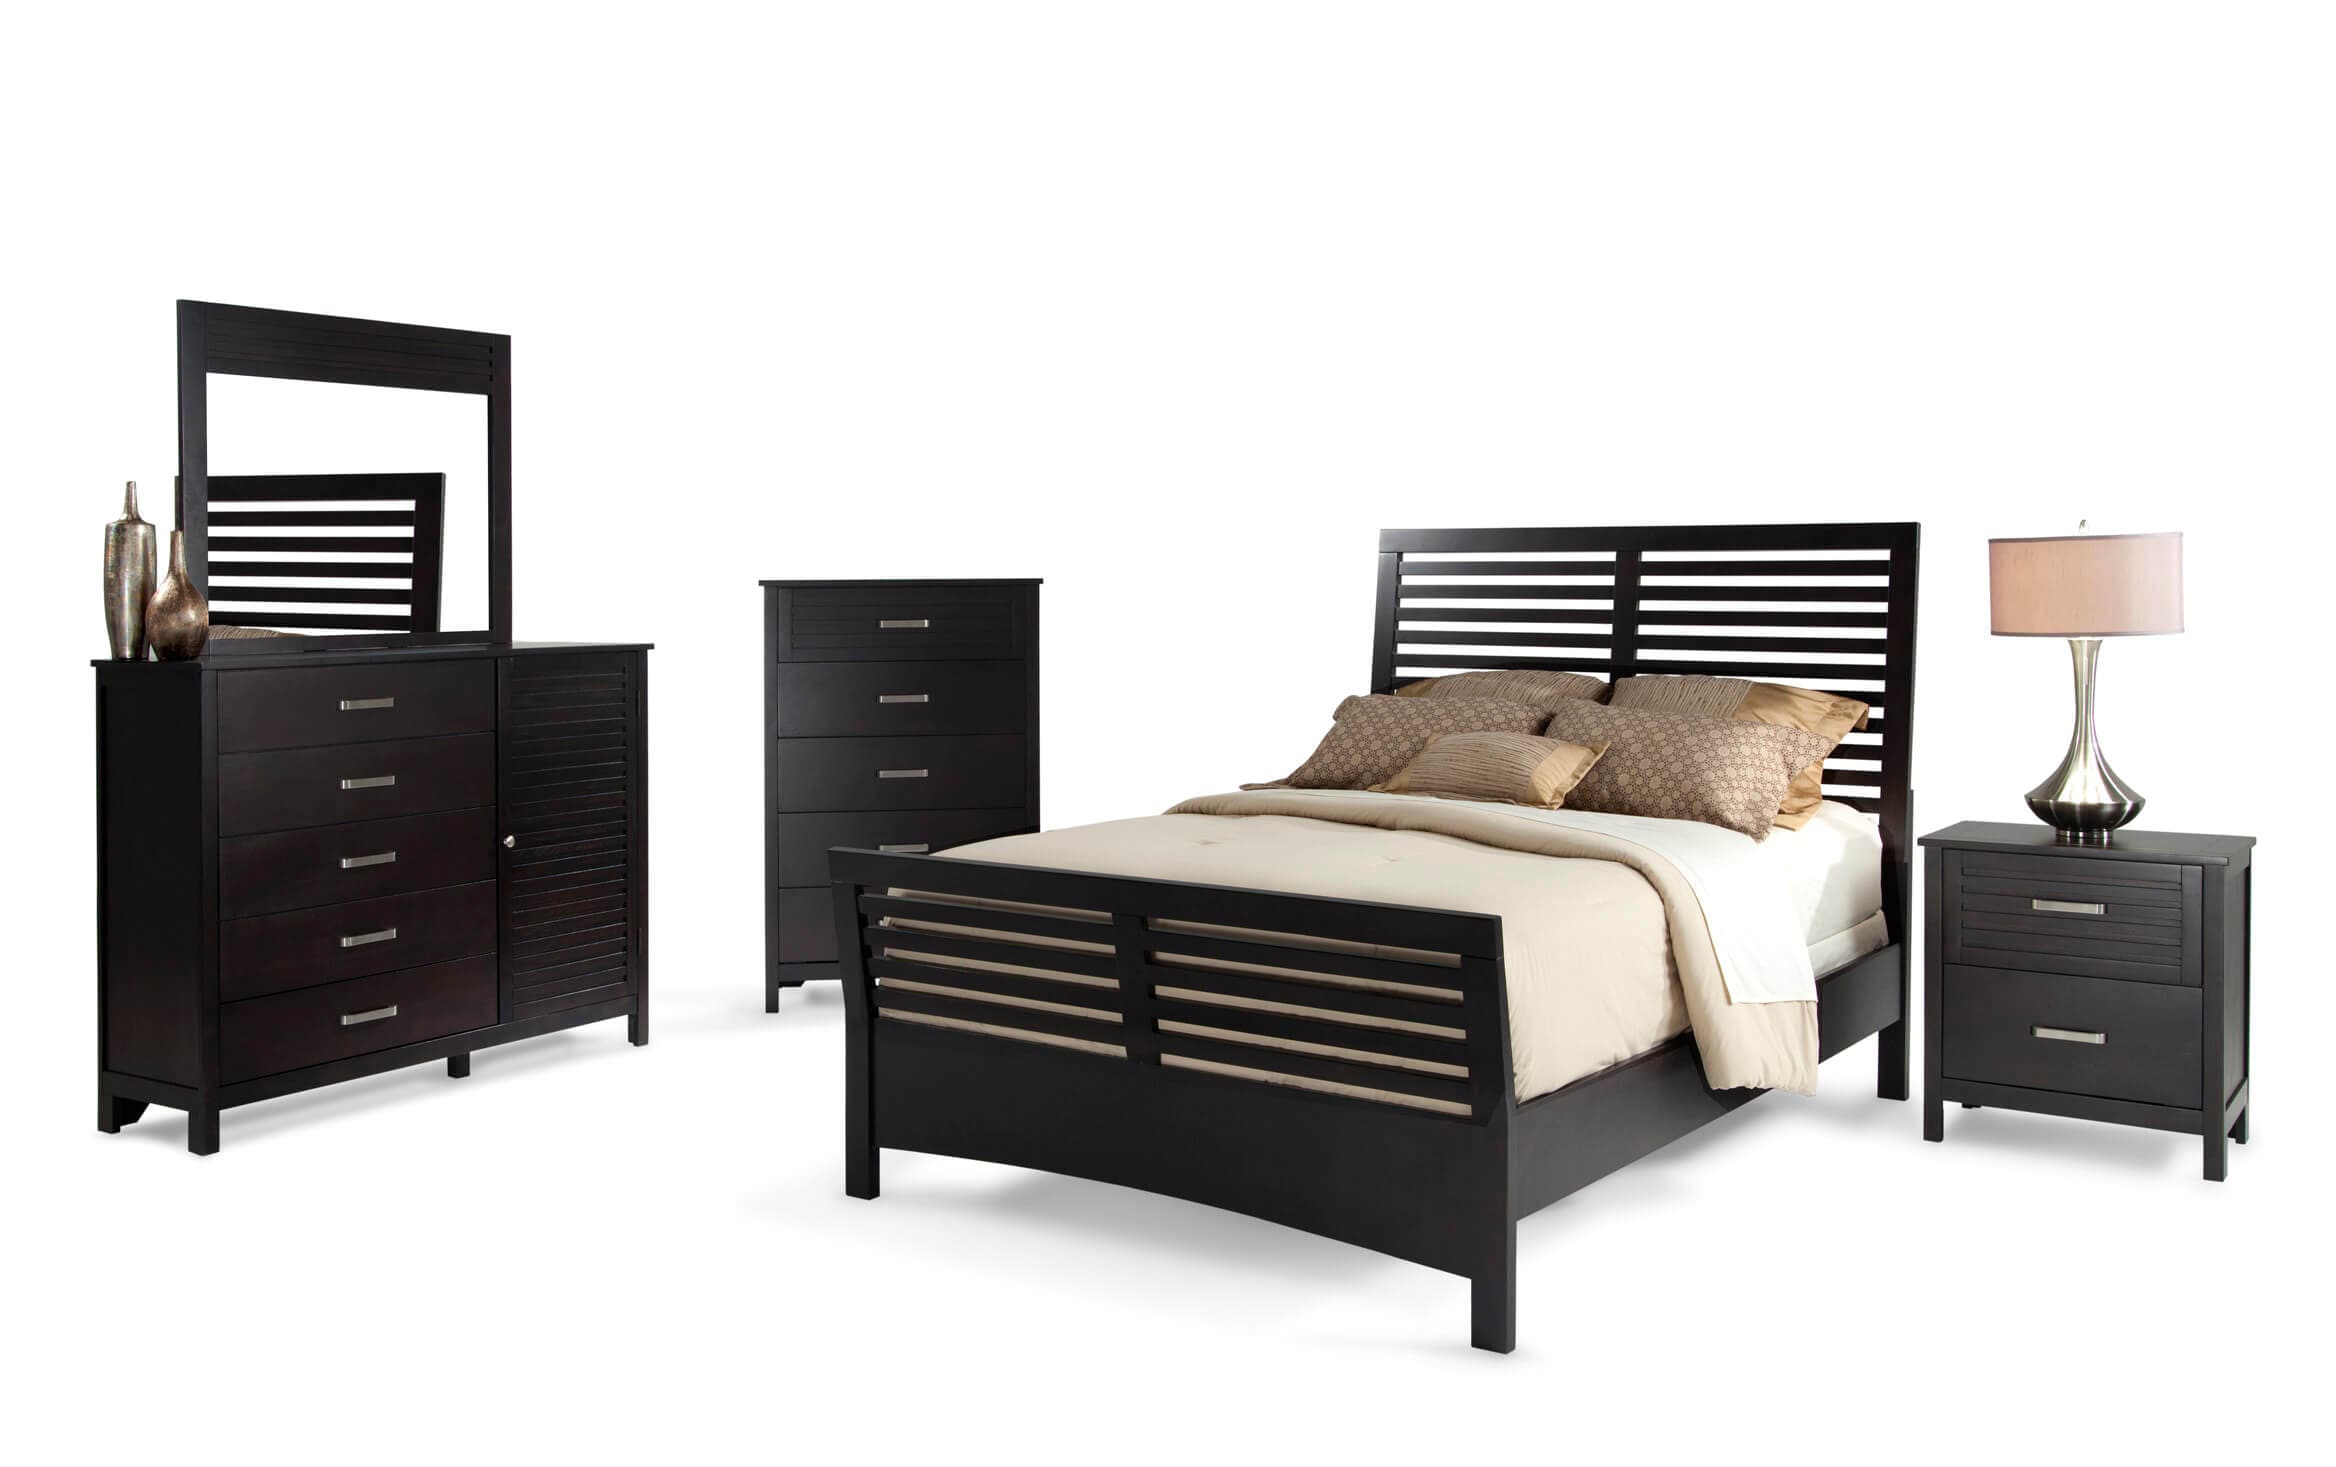 Dalton Queen Espresso Bedroom Set Bob, King Size Bed Sets Bobs Furniture